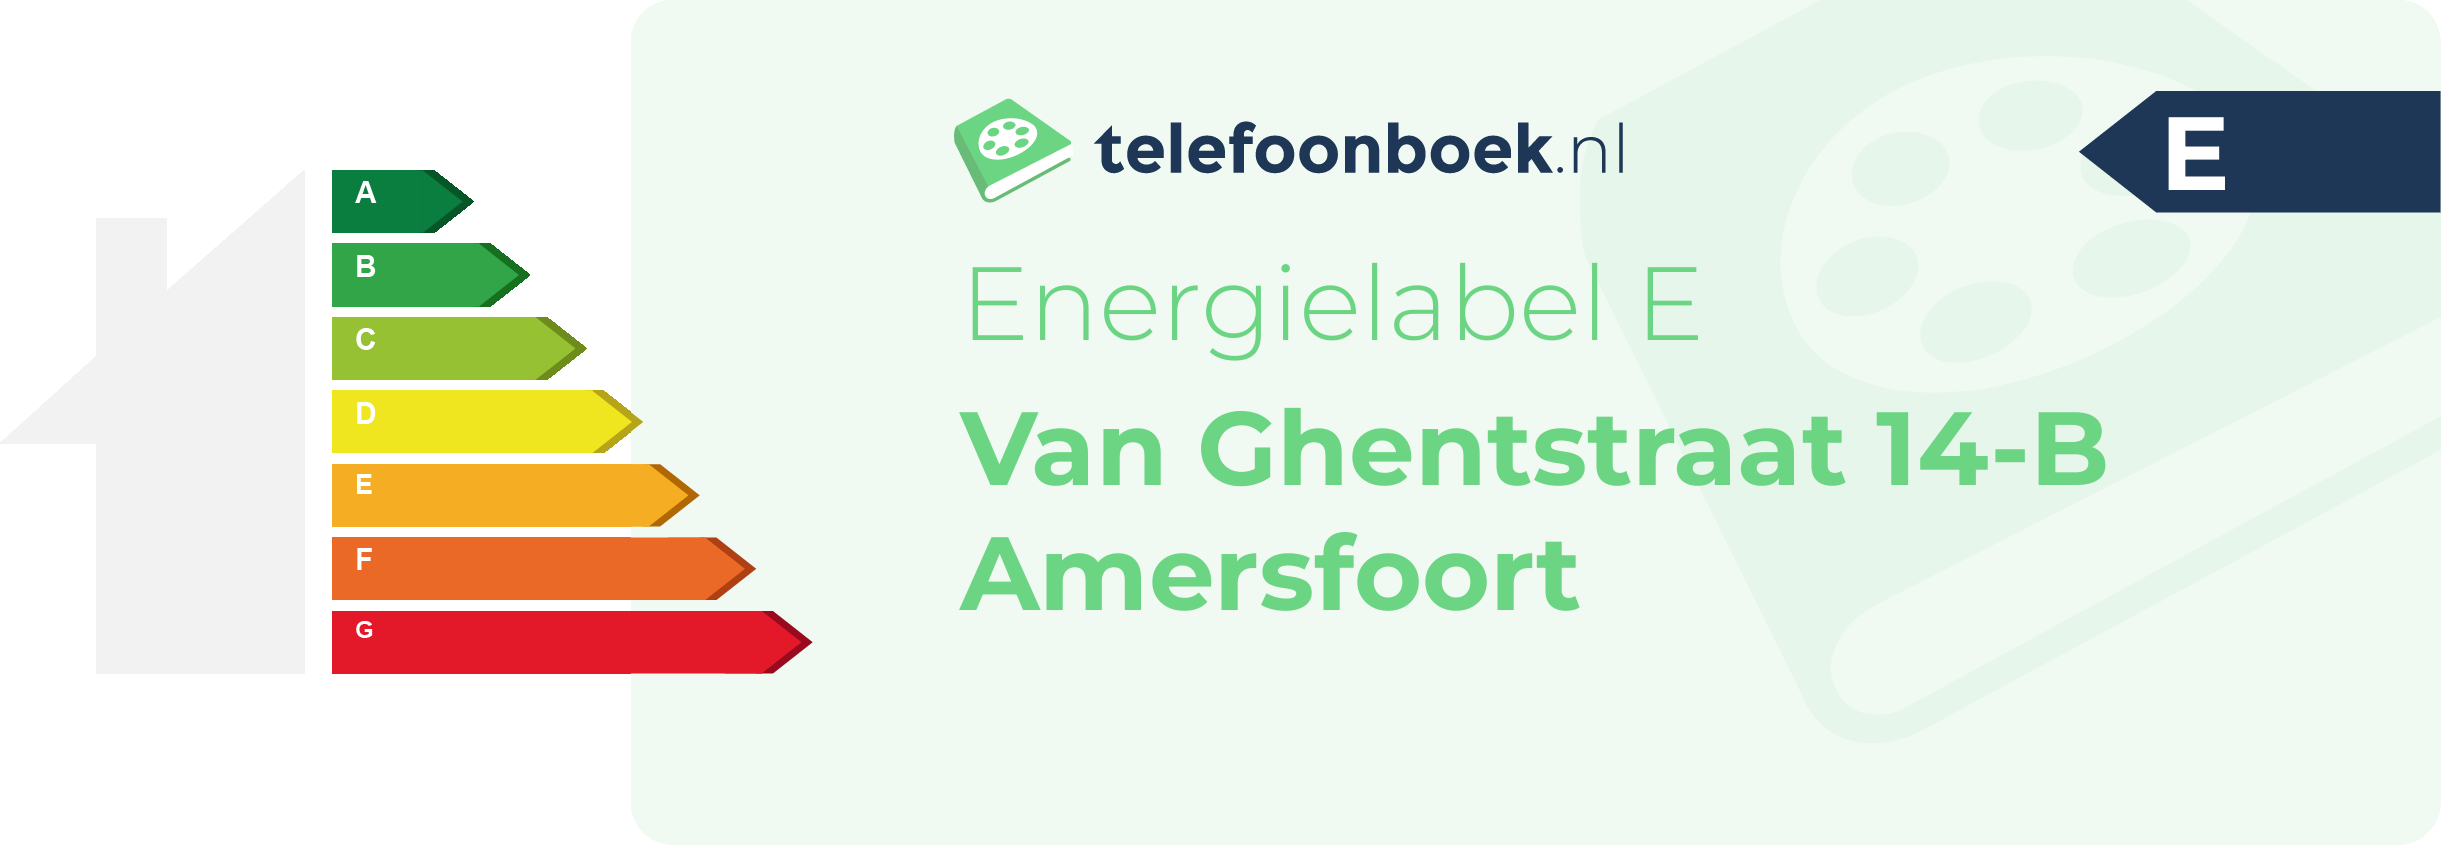 Energielabel Van Ghentstraat 14-B Amersfoort